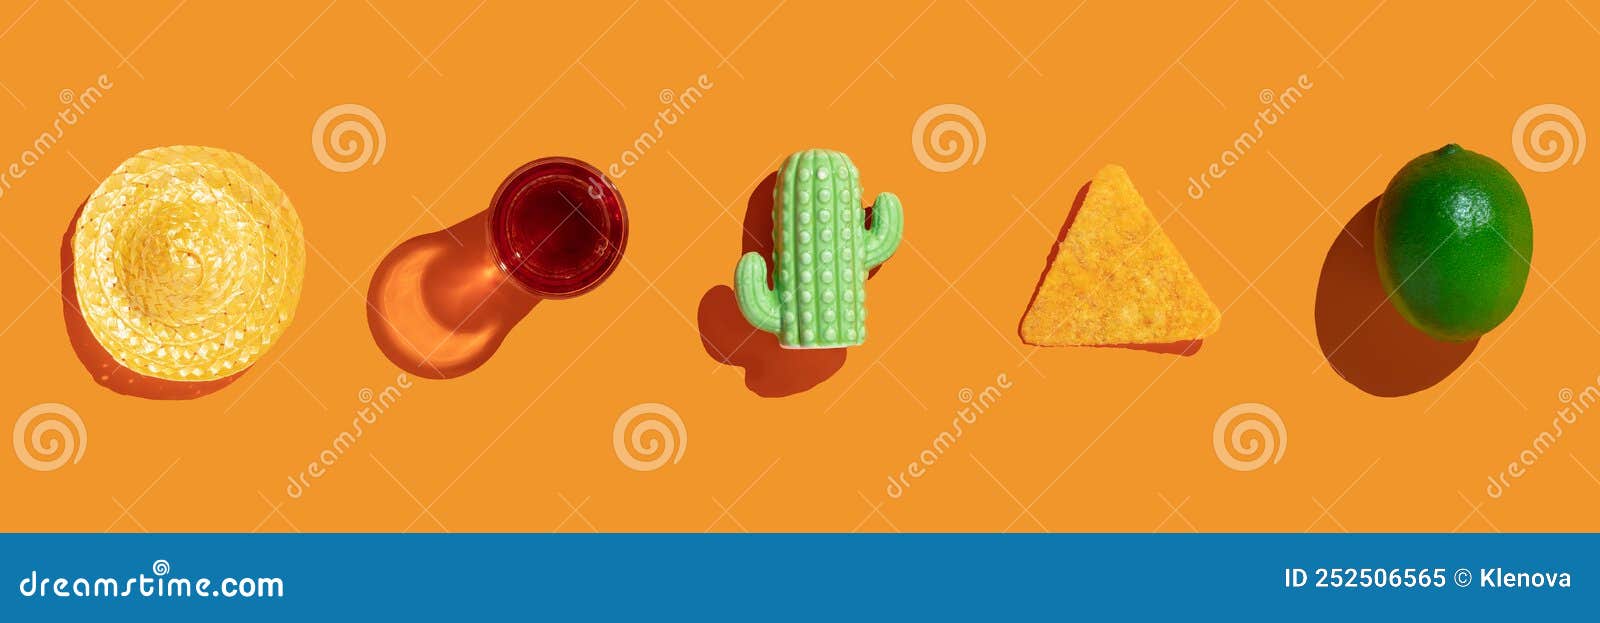 Modelo de banner do  de restaurante de comida mexicana